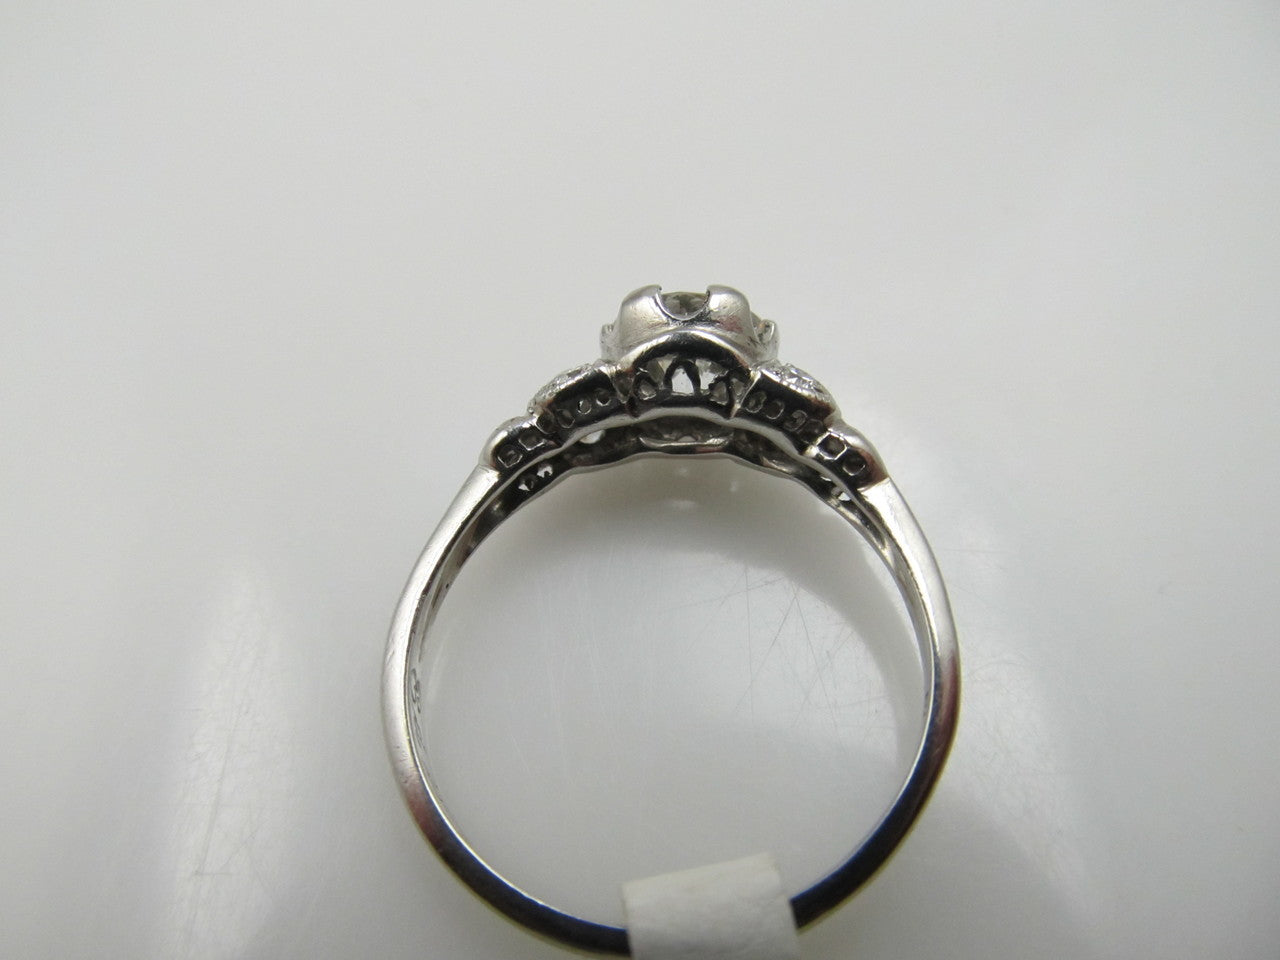 Antique platinum filigree ring with a .88ct diamond